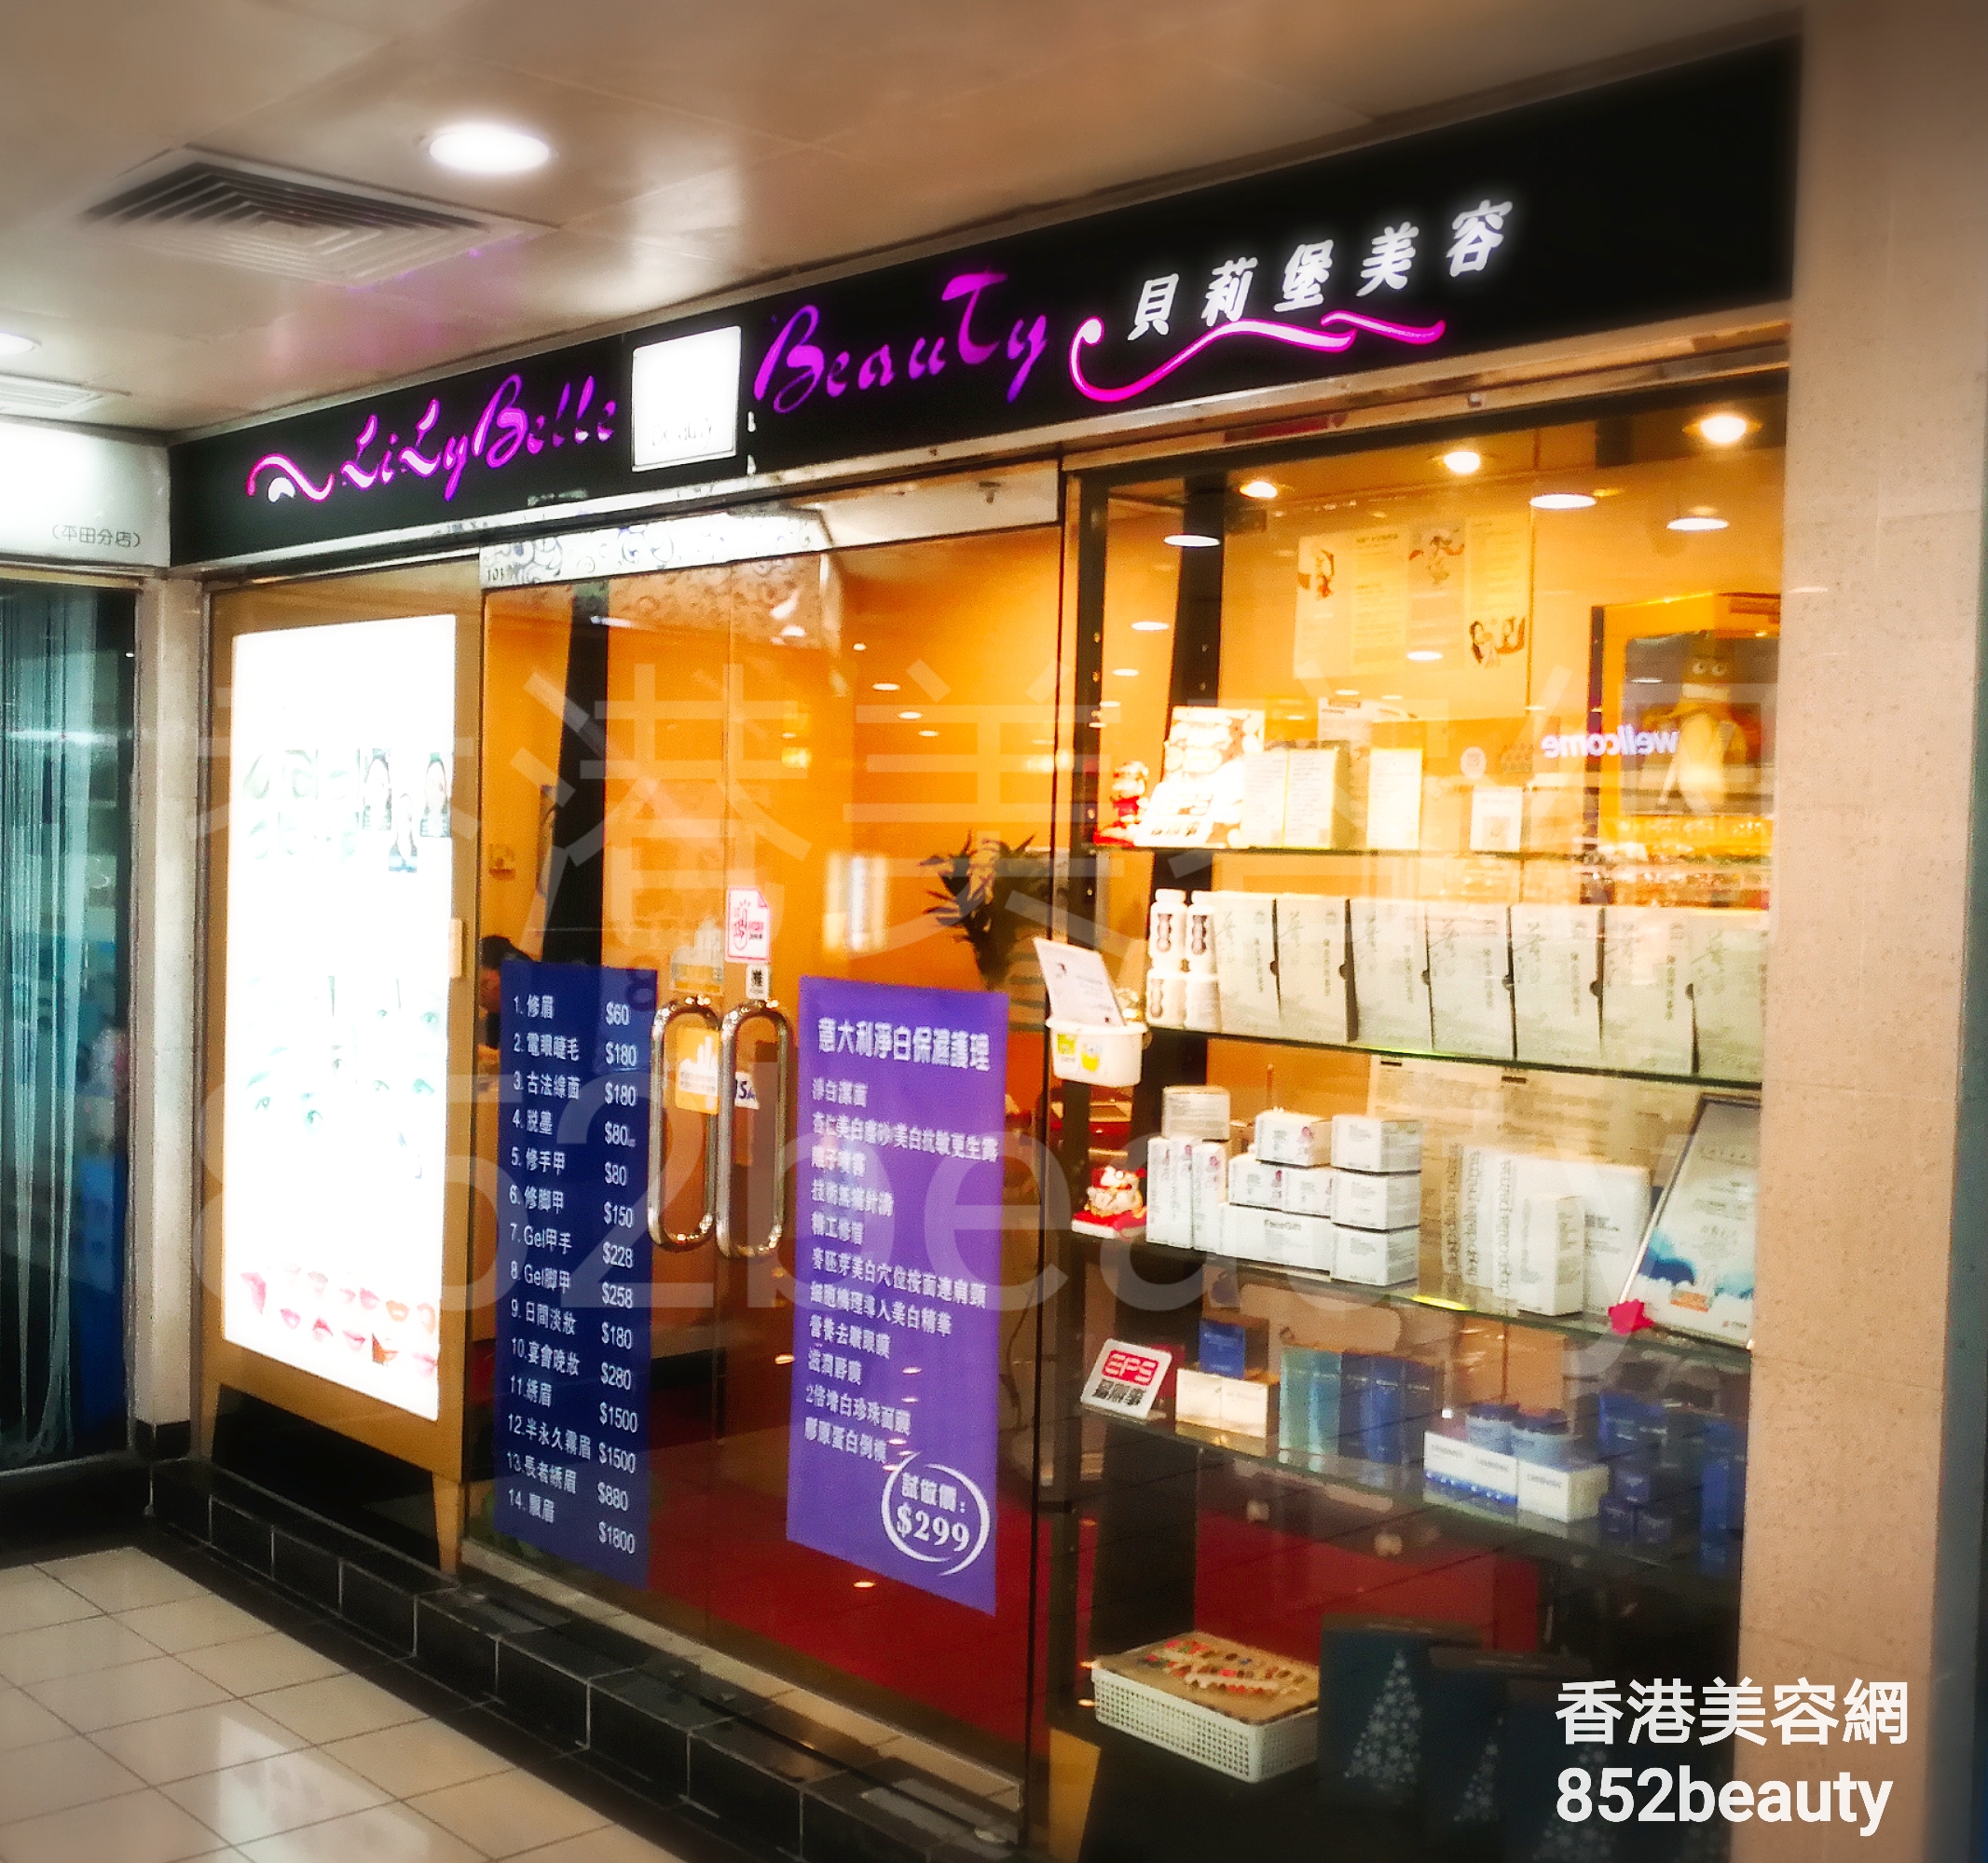 香港美容網 Hong Kong Beauty Salon 美容院 / 美容師: 貝莉堡美容